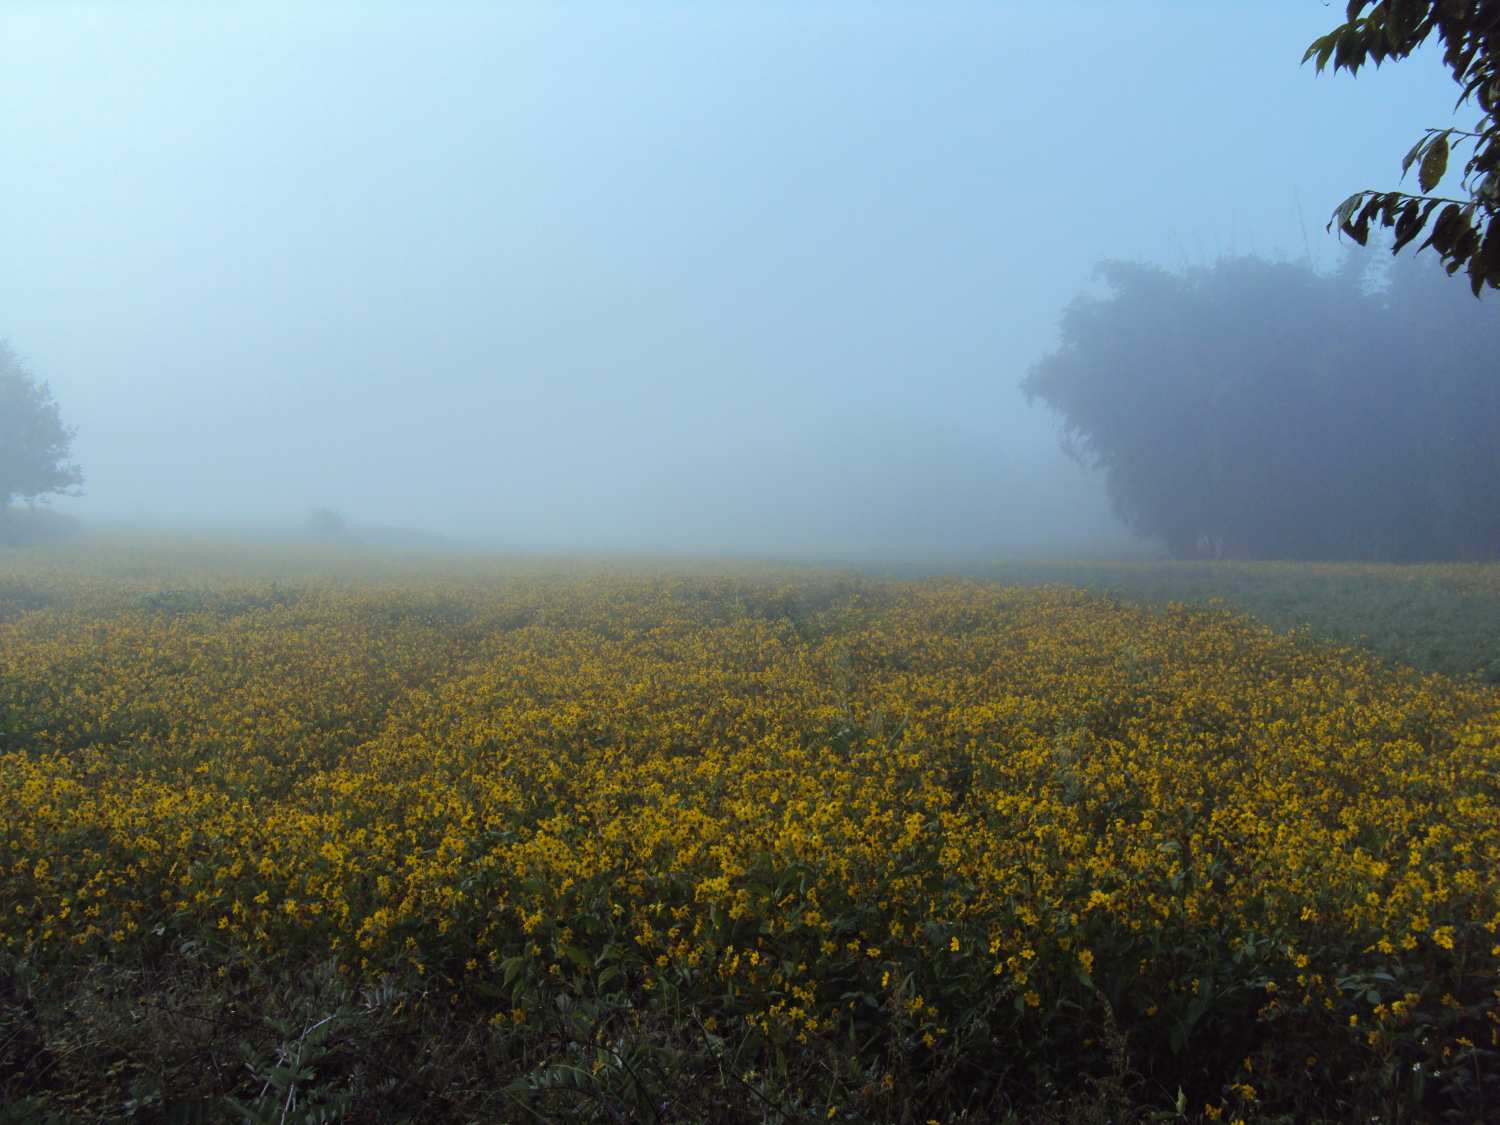 Fields in fog